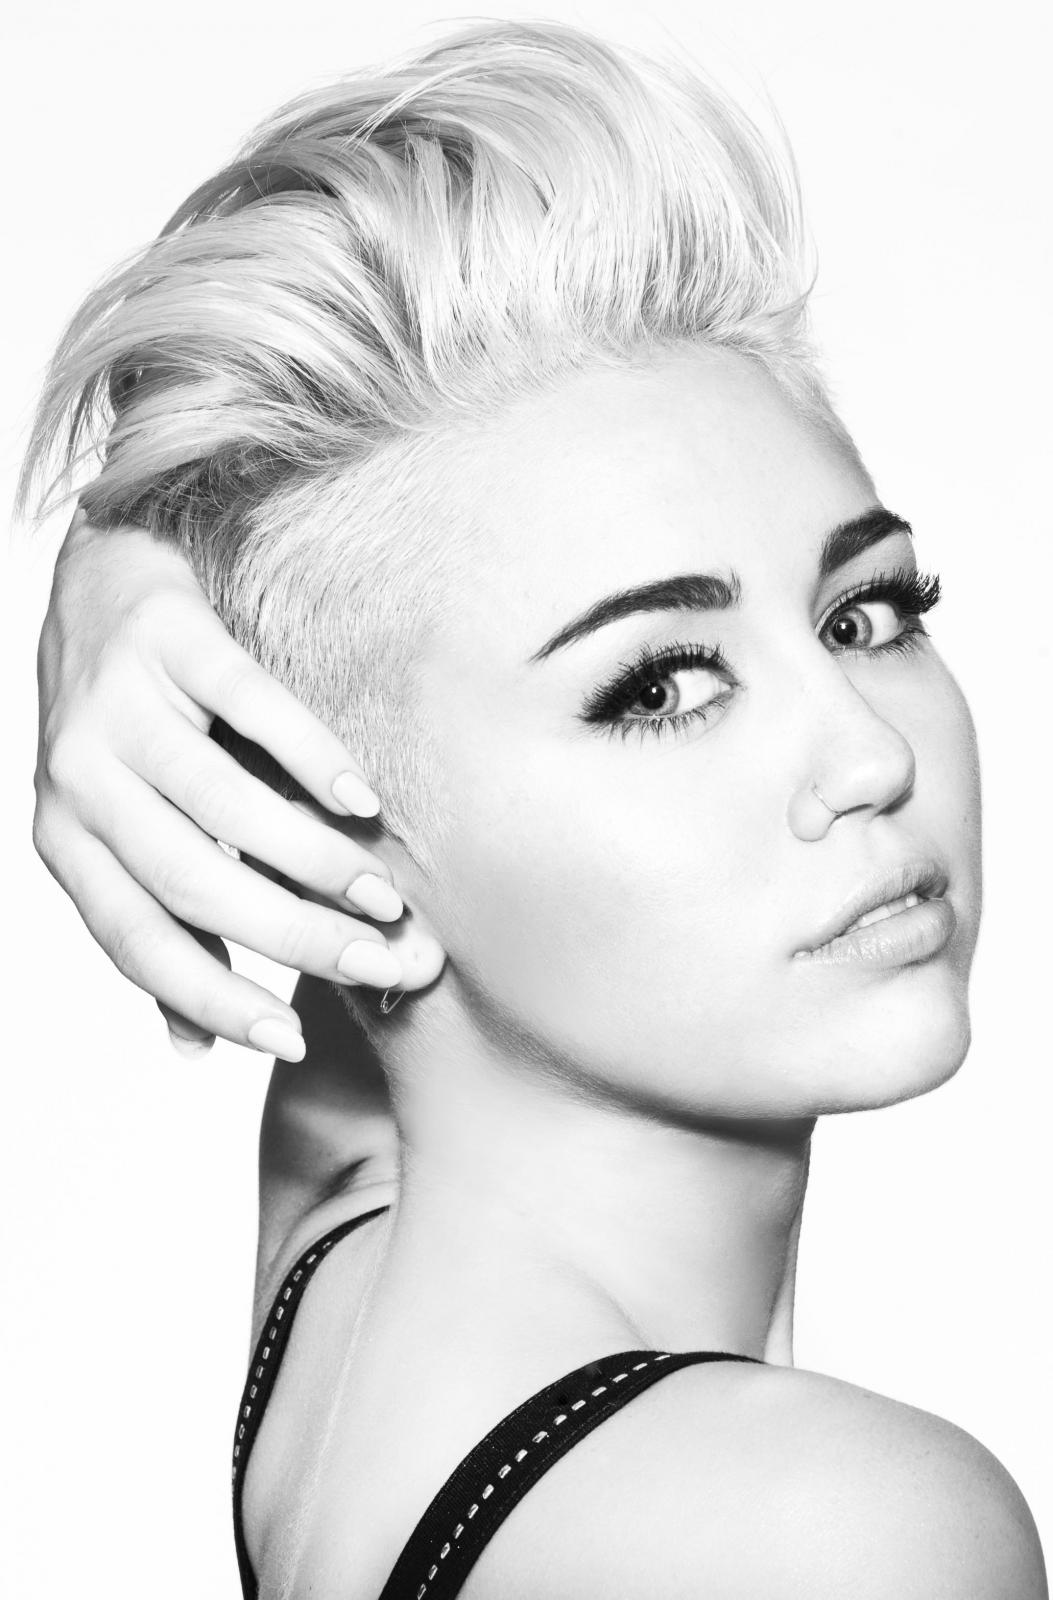 Euer Lieblingsalbum von Miley Cyrus?